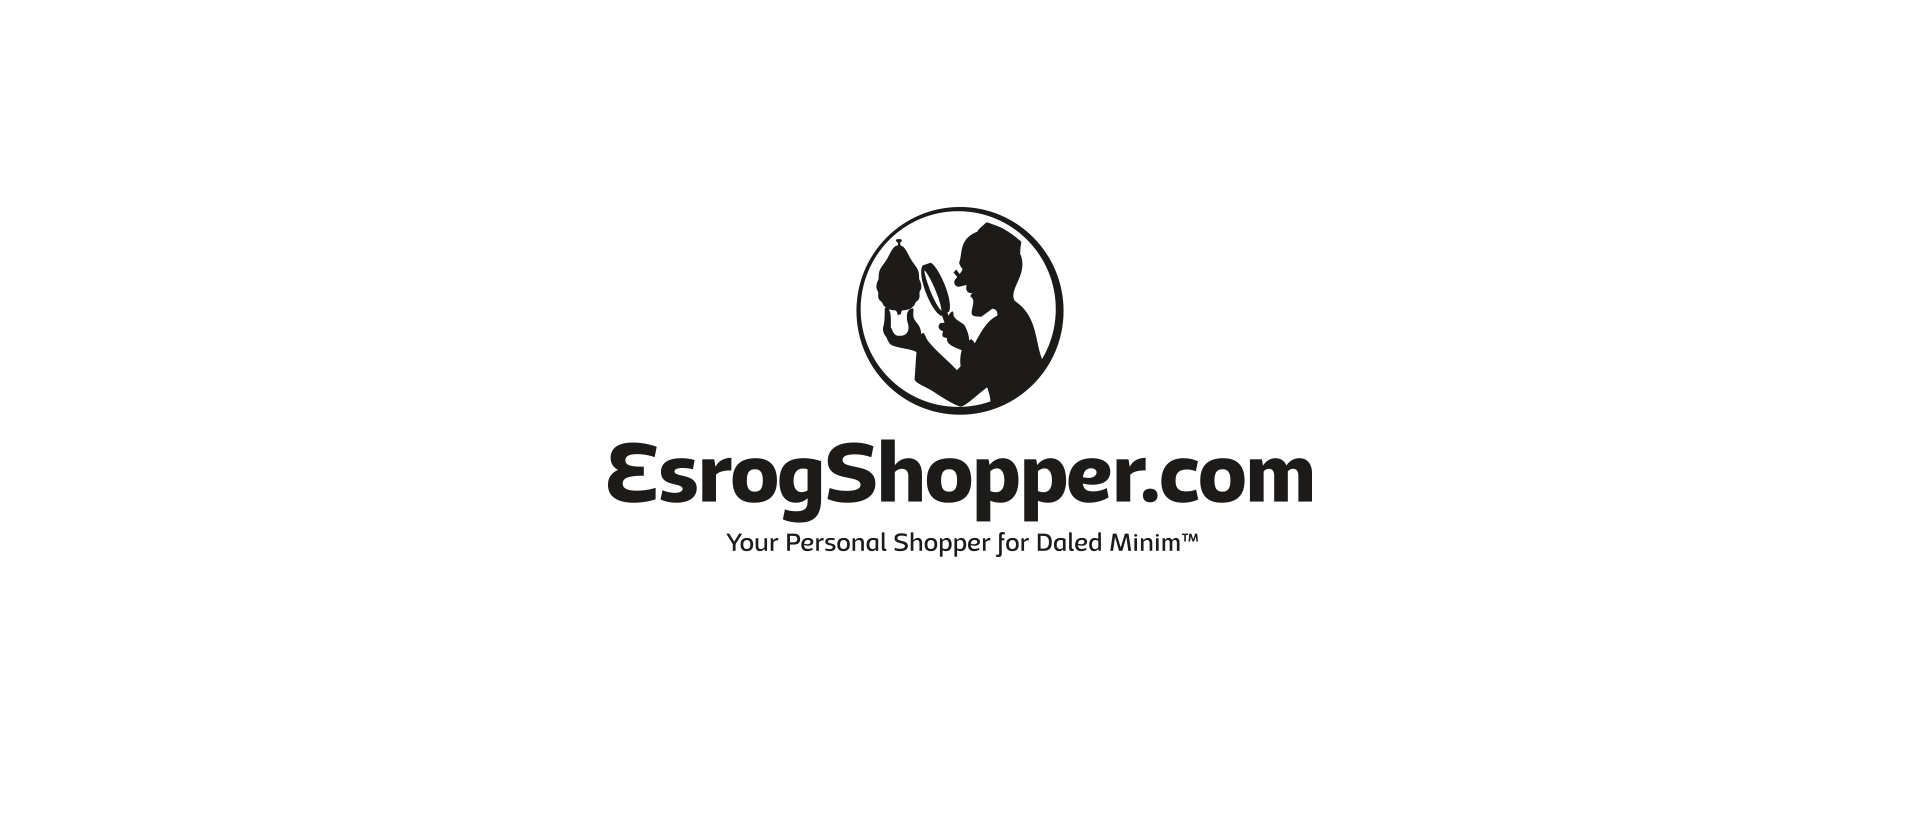 HOME  The Esrog Shopper